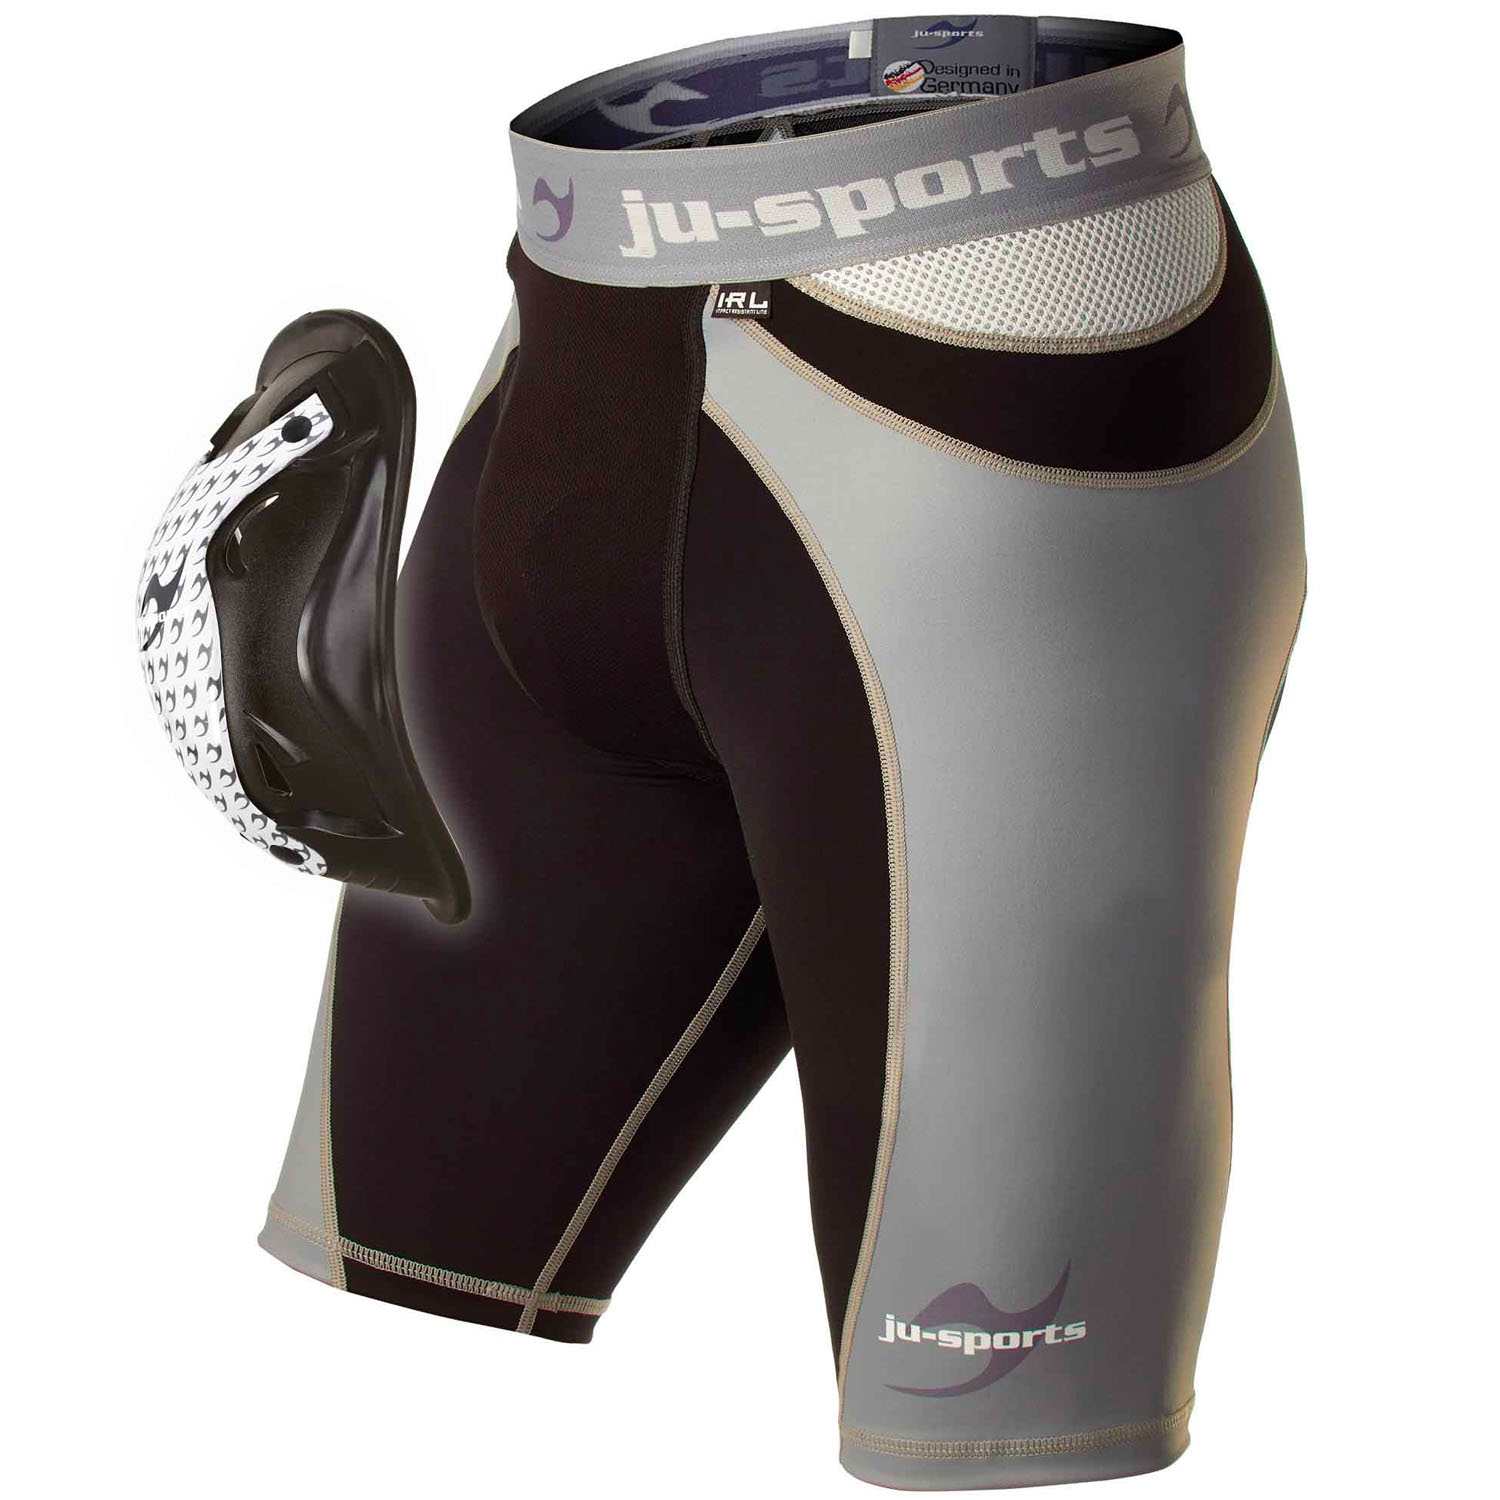 Ju-Sports Compression Shorts, Pro Line Motion Pro Flexcup XL